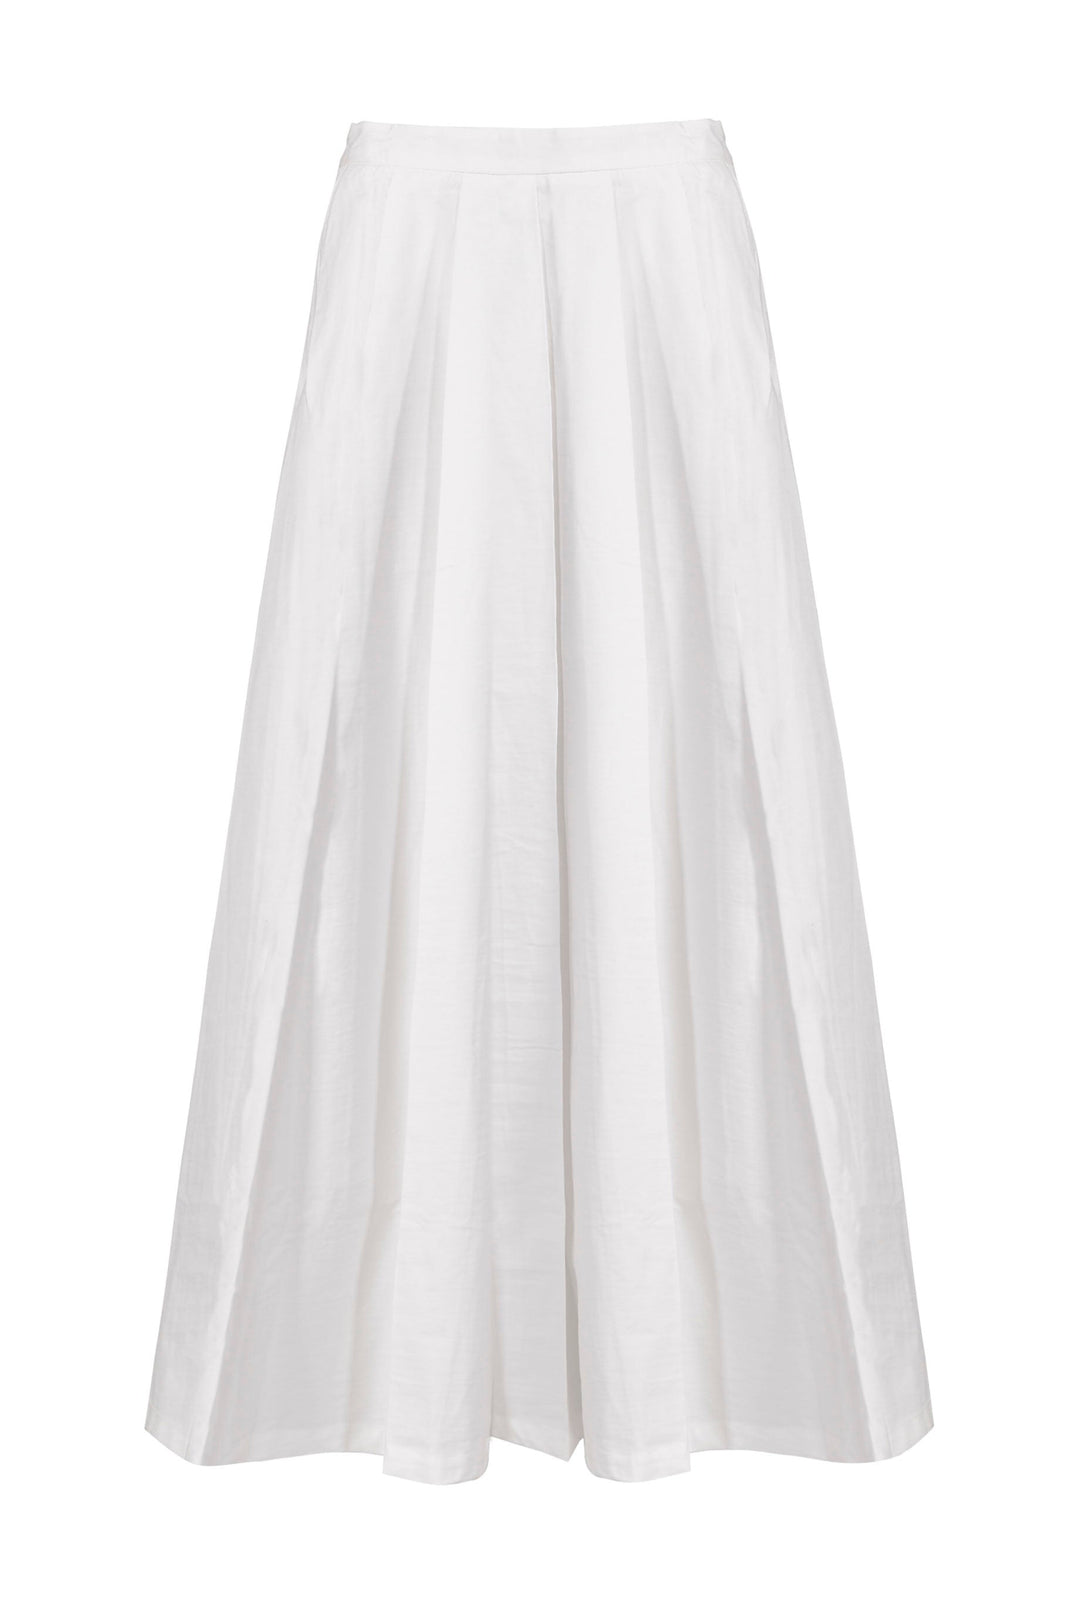 Blanca Brooke Skirt - White